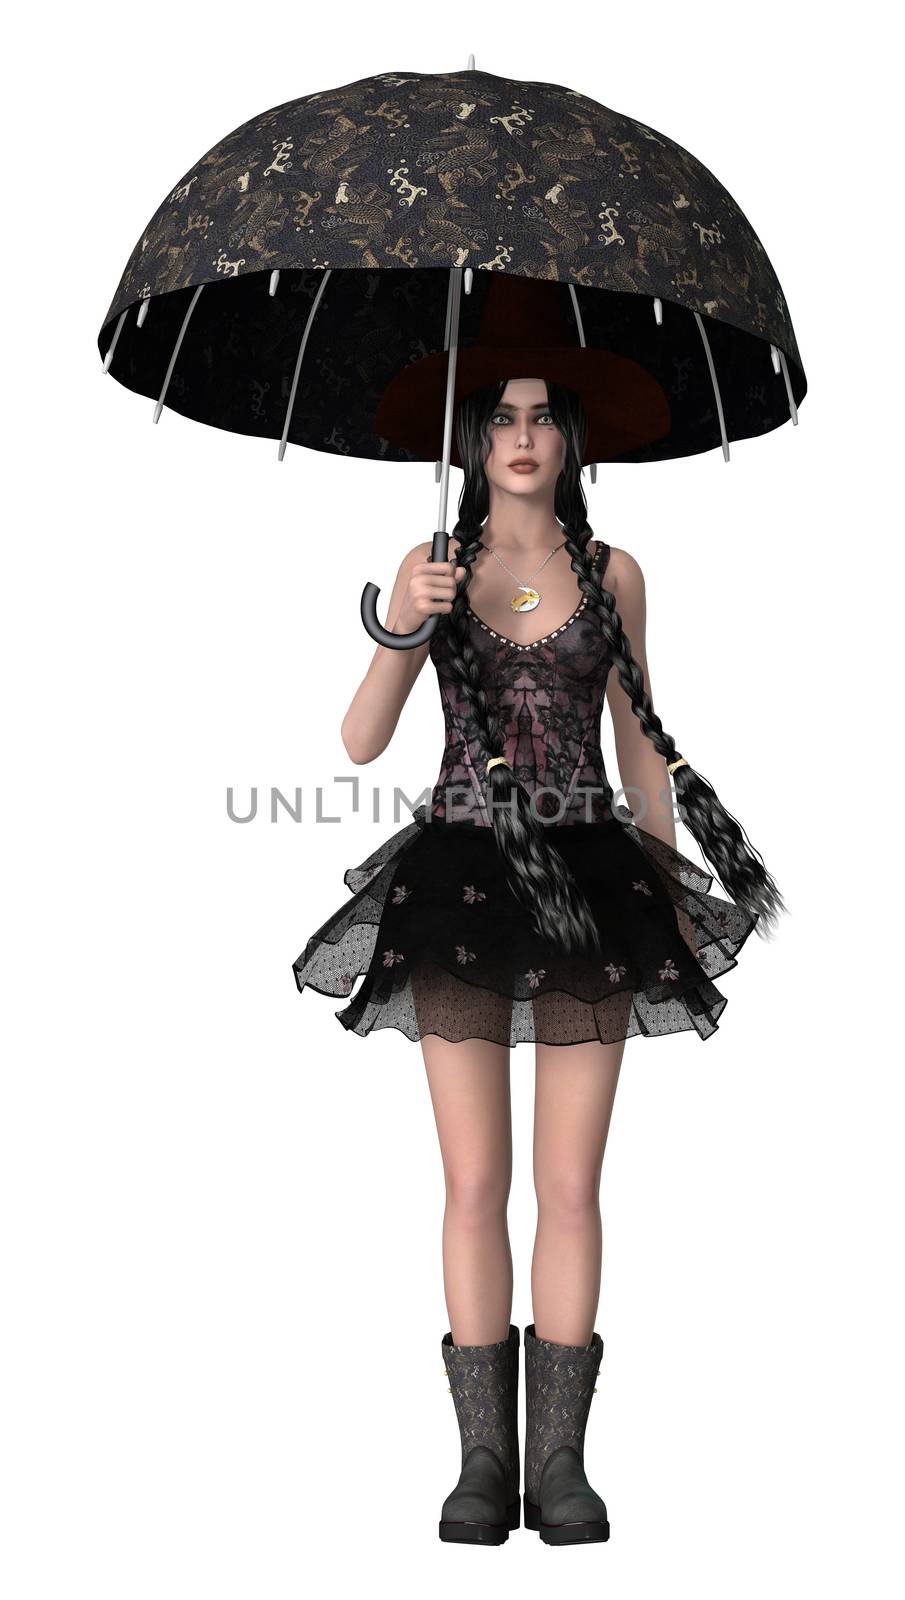 Under Umbrella by Vac